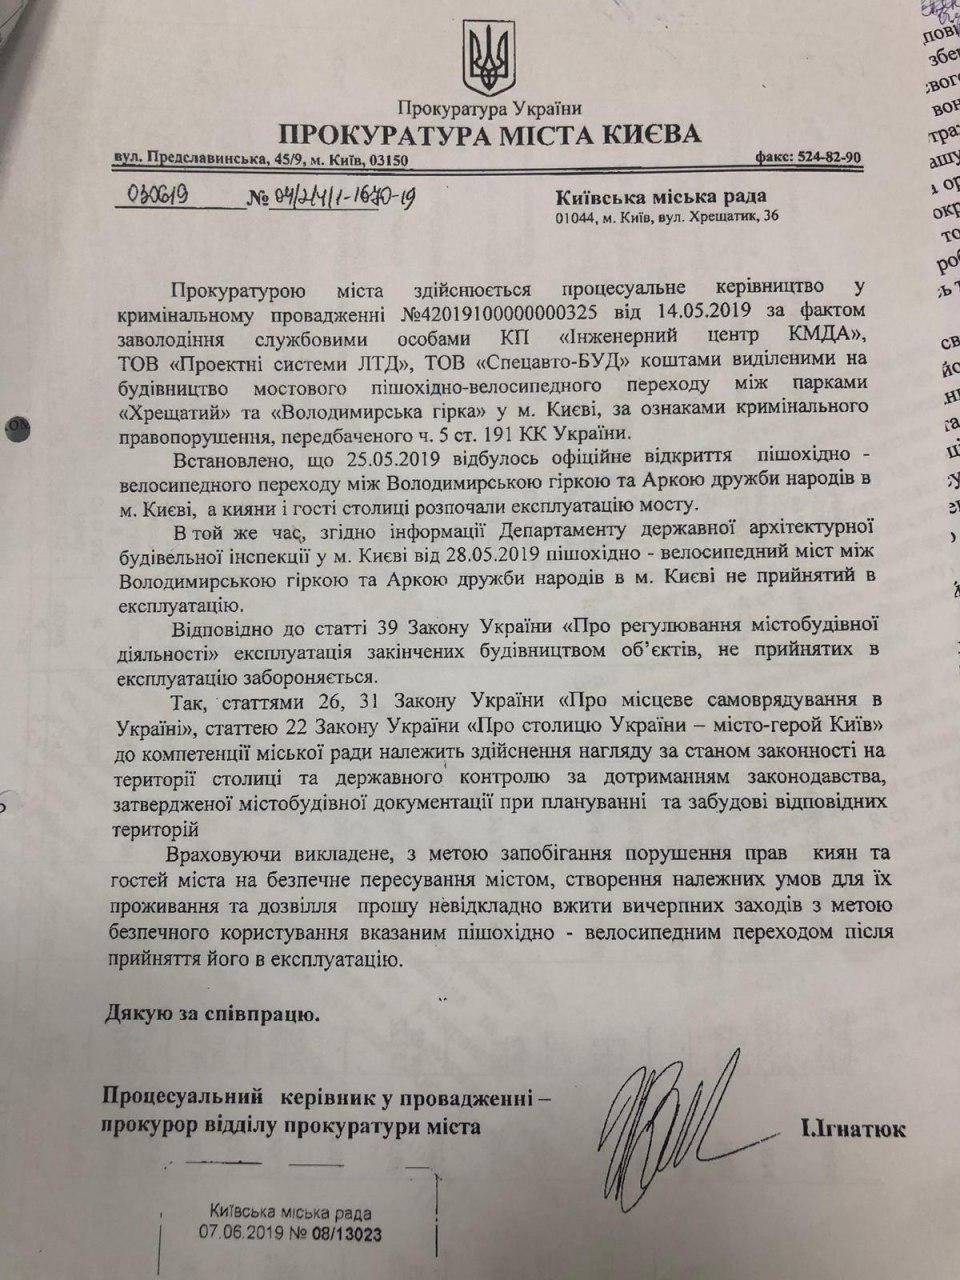 Прокуратура просит городской совет Киева принять “мост Кличко“ в эксплуатацию